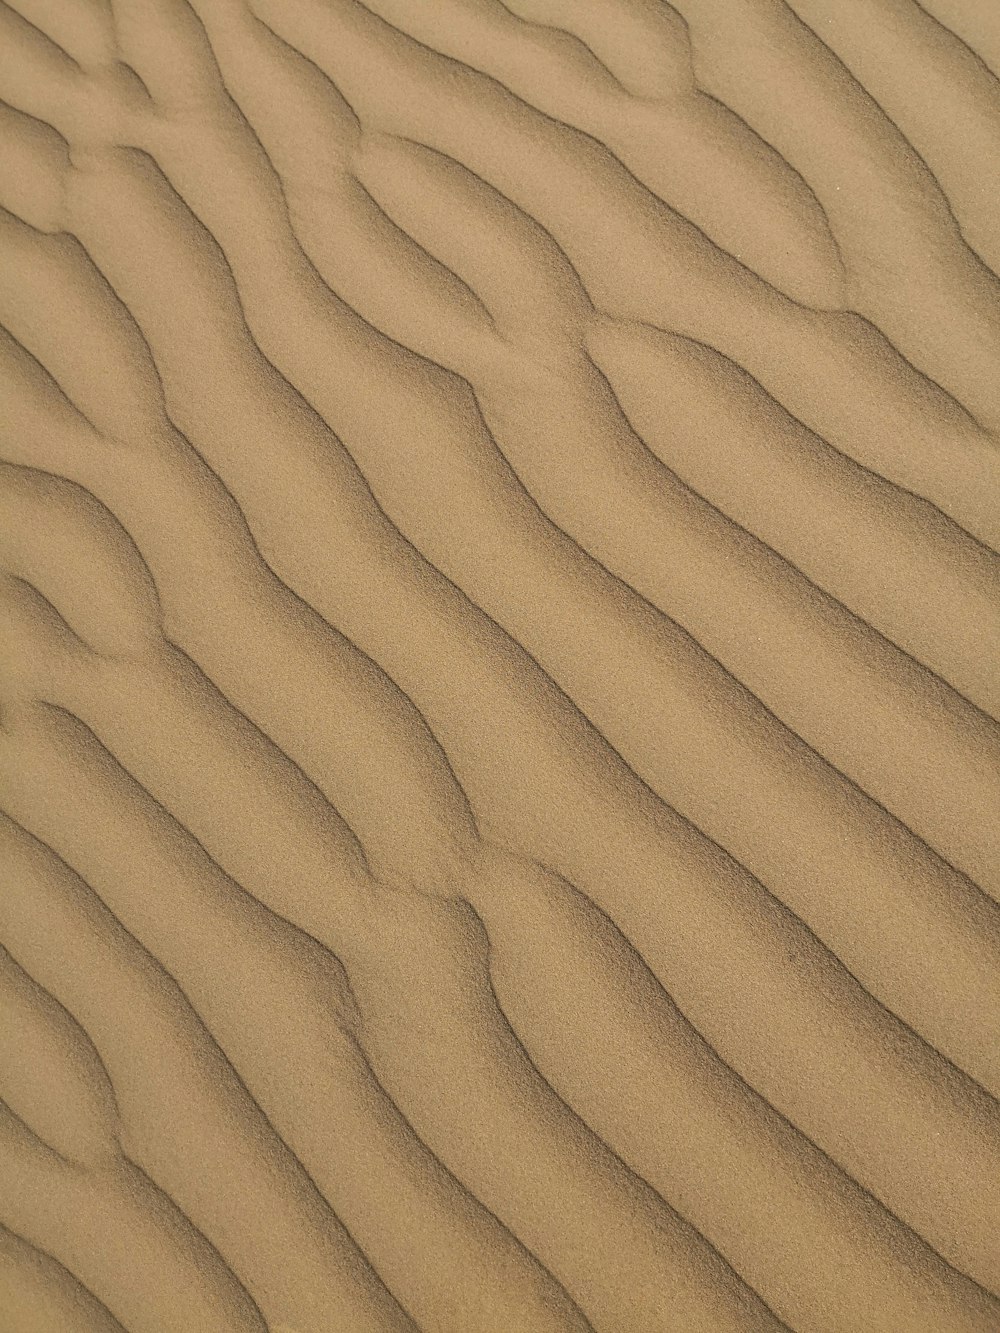 砂の中に波線が入った砂丘